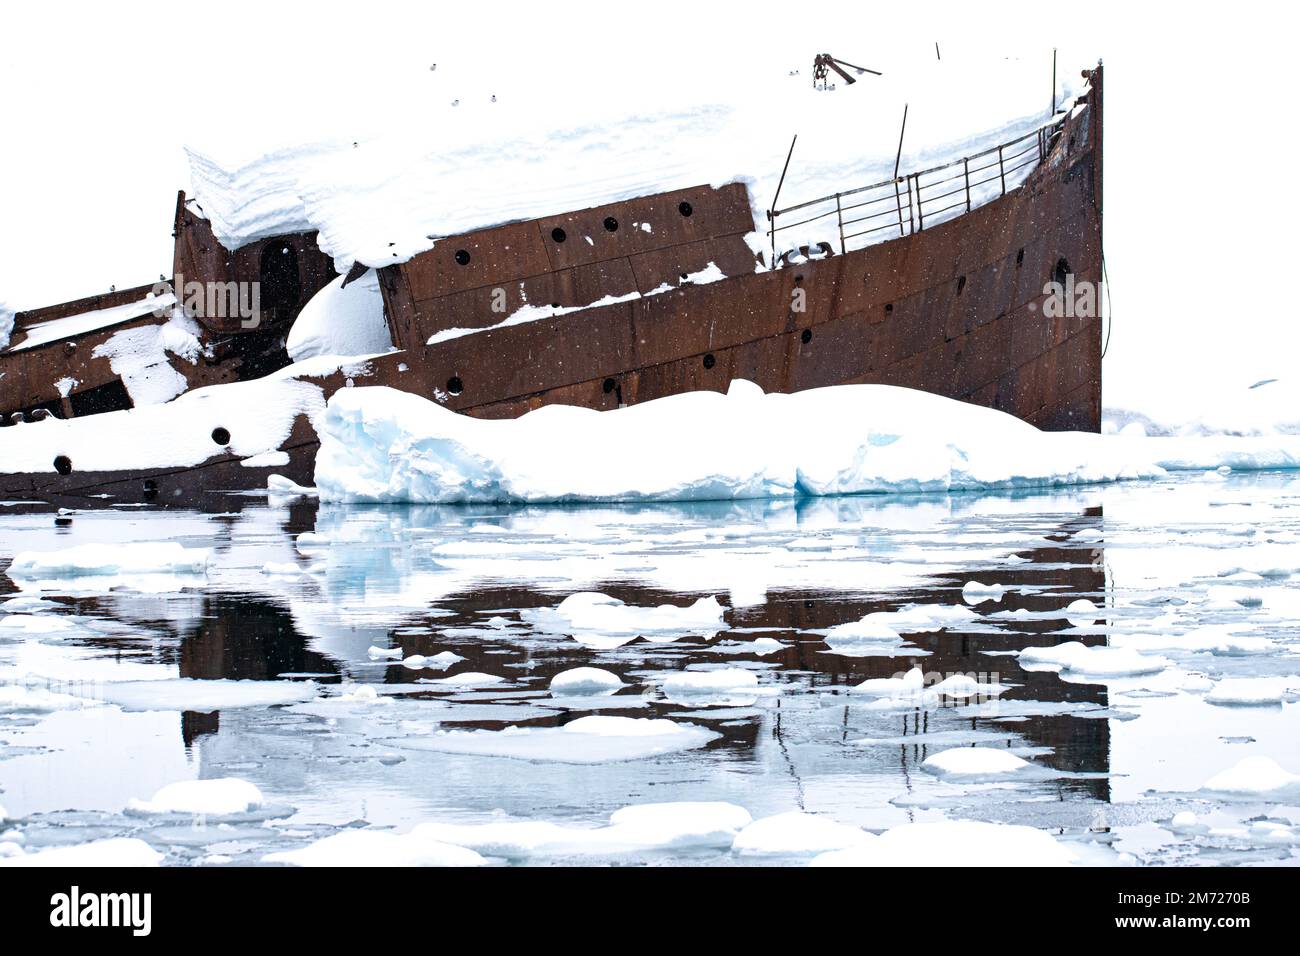 Ein Walfangschiff aus Metall versank in das eisige kalte Wasser rund um die Antarktis, Foyn Harbor. Stockfoto